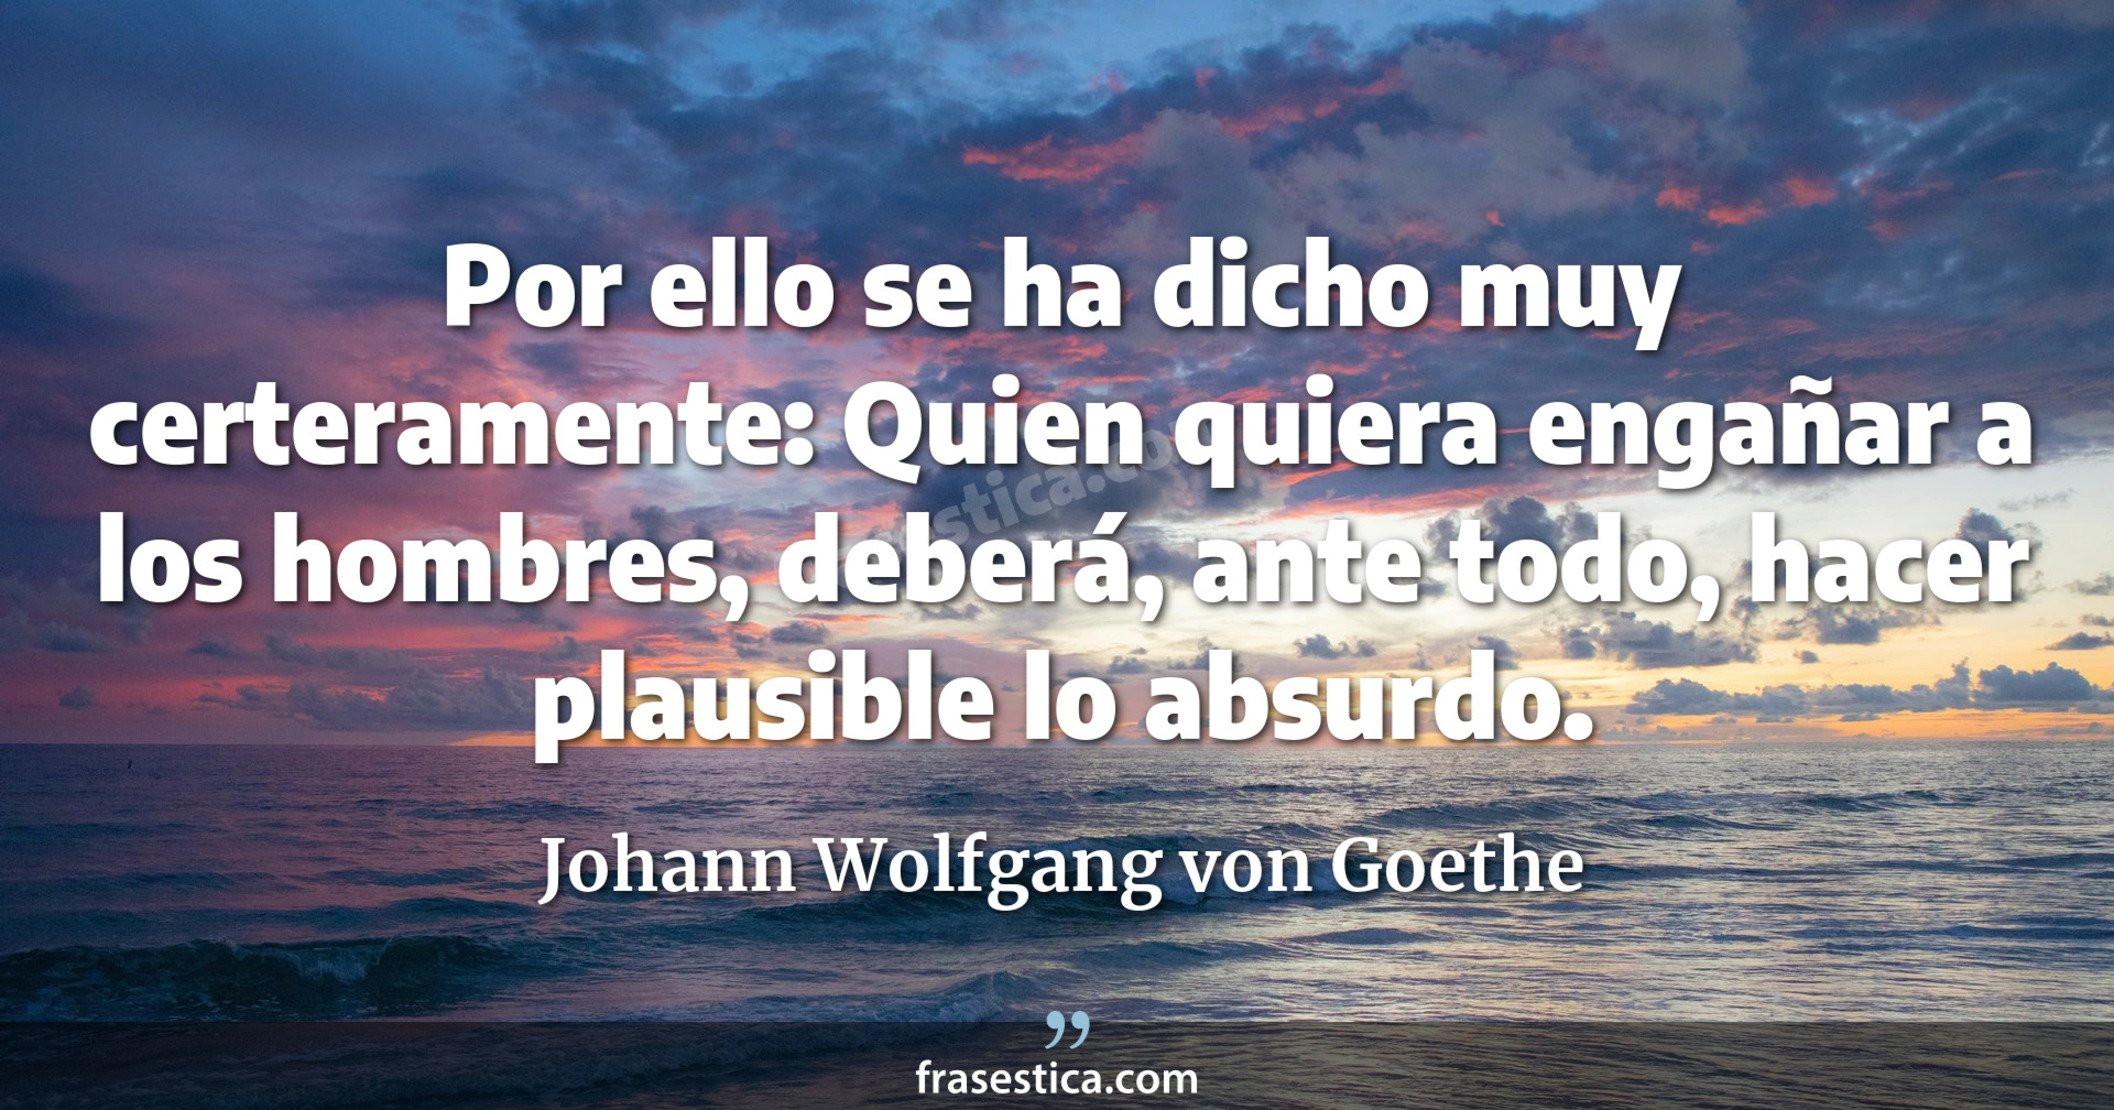 Por ello se ha dicho muy certeramente: Quien quiera engañar a los hombres, deberá, ante todo, hacer plausible lo absurdo. - Johann Wolfgang von Goethe